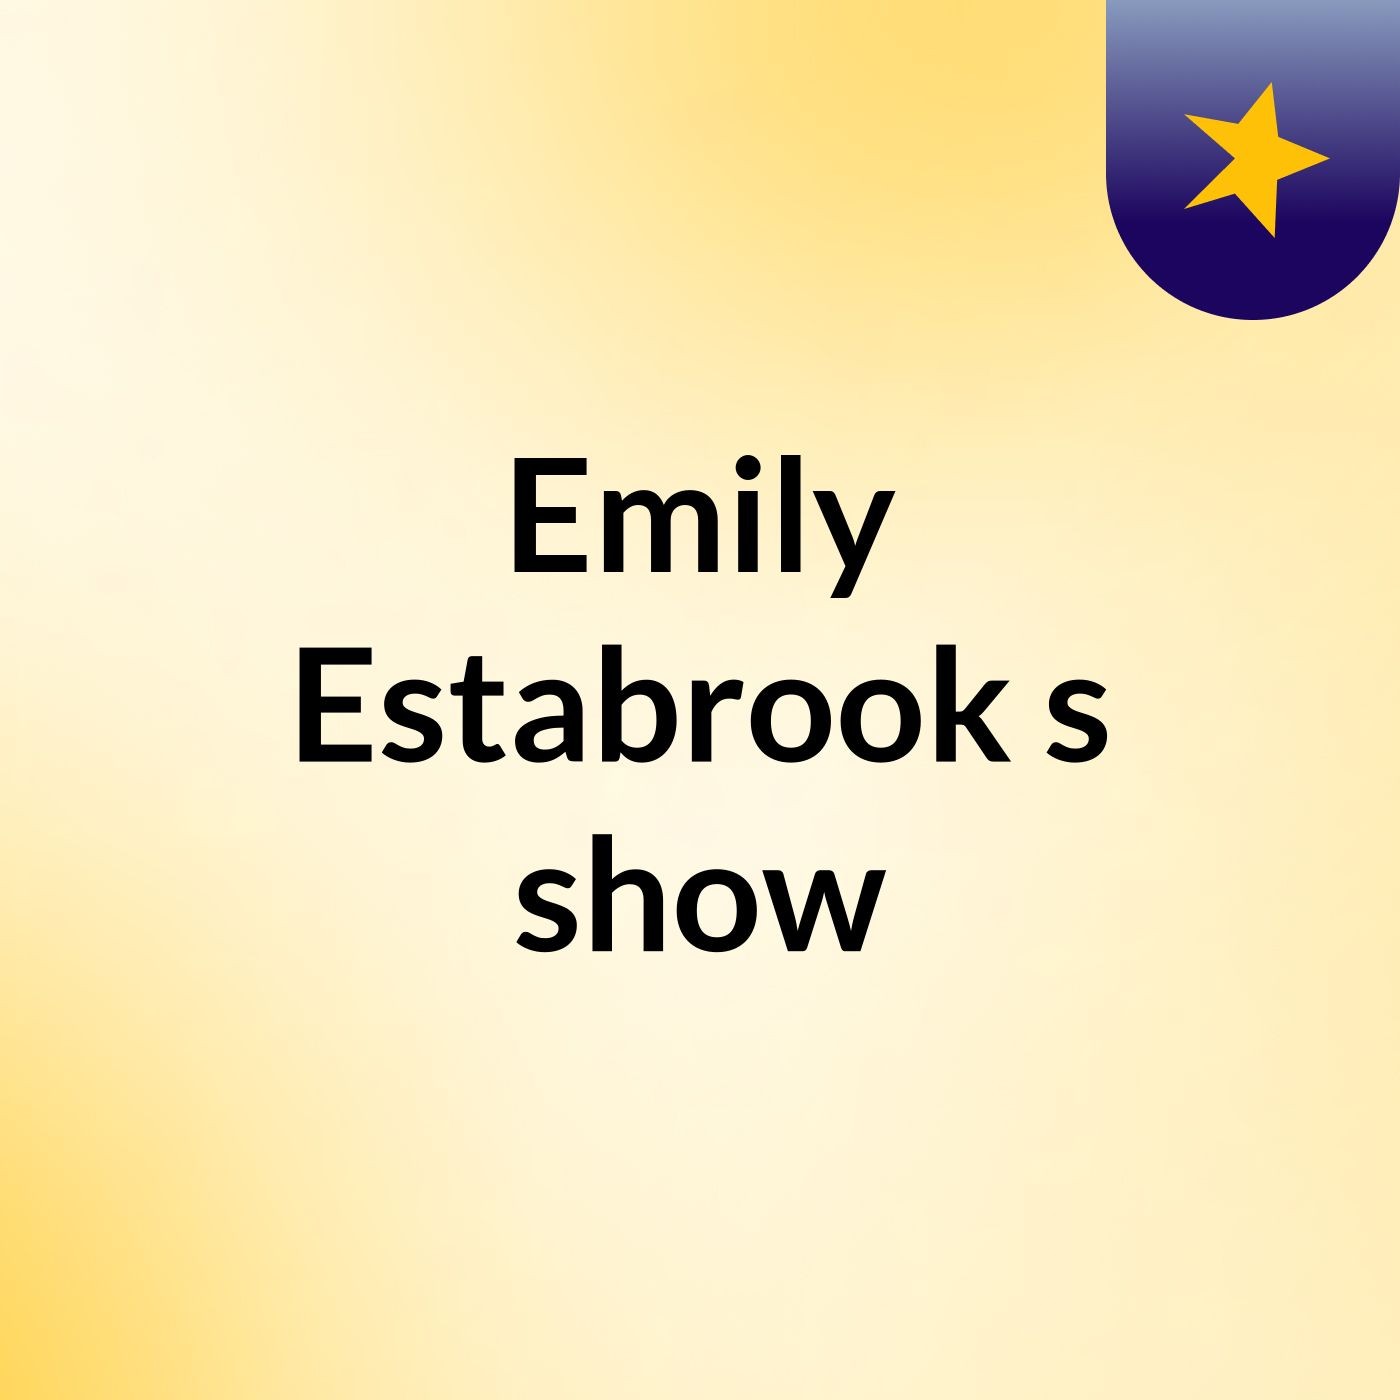 Emily Estabrook's show